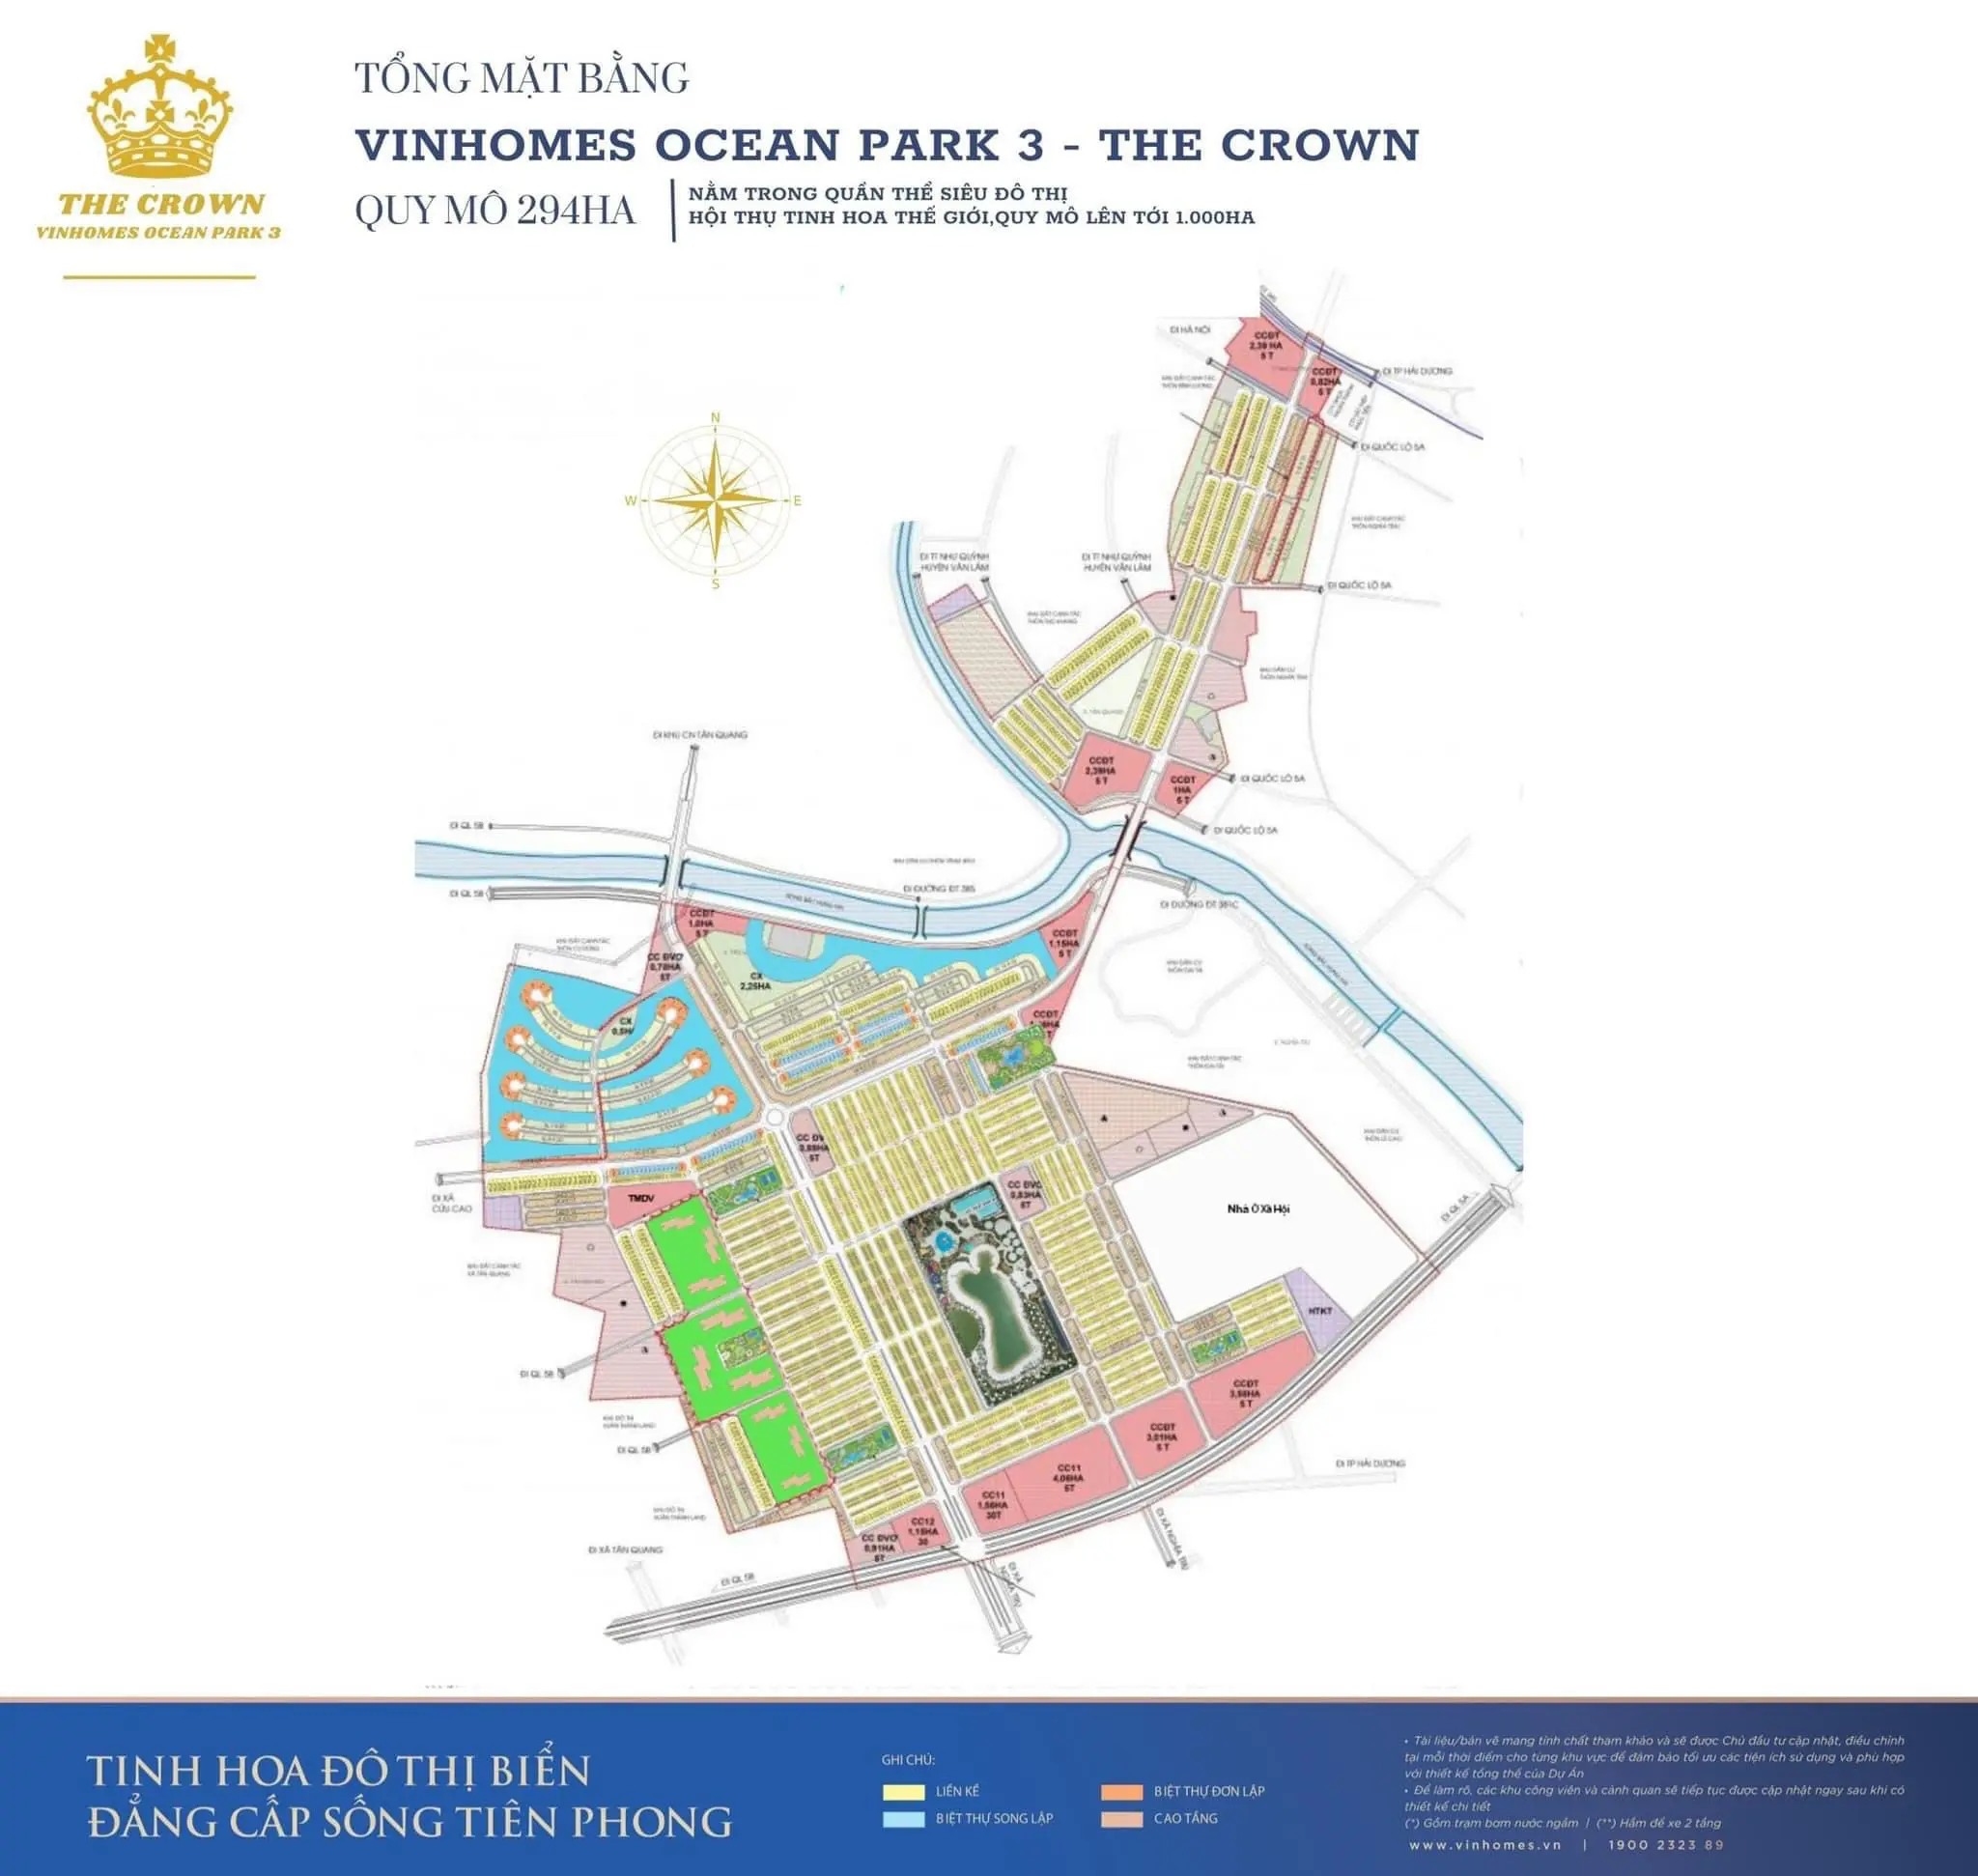 1) Bản đồ Vinhomes Ocean Park 3 - The Crown sẽ khiến bạn ấn tượng với thiết kế hiện đại, đầy đủ tiện ích và không gian xanh tuyệt vời. Tận hưởng cuộc sống sang trọng tại Vinhomes Ocean Park cùng The Crown!
2) Thông tin Vinhomes Ocean Park tòa S2.06 sẽ là thông tin hữu ích dành cho những ai đang tìm kiếm một nơi ở lý tưởng. Với tiện ích đa dạng và hệ thống an ninh 24/7, đây là lựa chọn tốt nhất cho cuộc sống của bạn.
3) Mặt bằng dự án Vinhomes Ocean Park 2 - The Empire sẽ đem đến cho bạn không gian sống vô cùng đa dạng và thoải mái. Với kiến trúc sang trọng và tiện ích đầy đủ, The Empire là nơi tuyệt vời để gọi là \